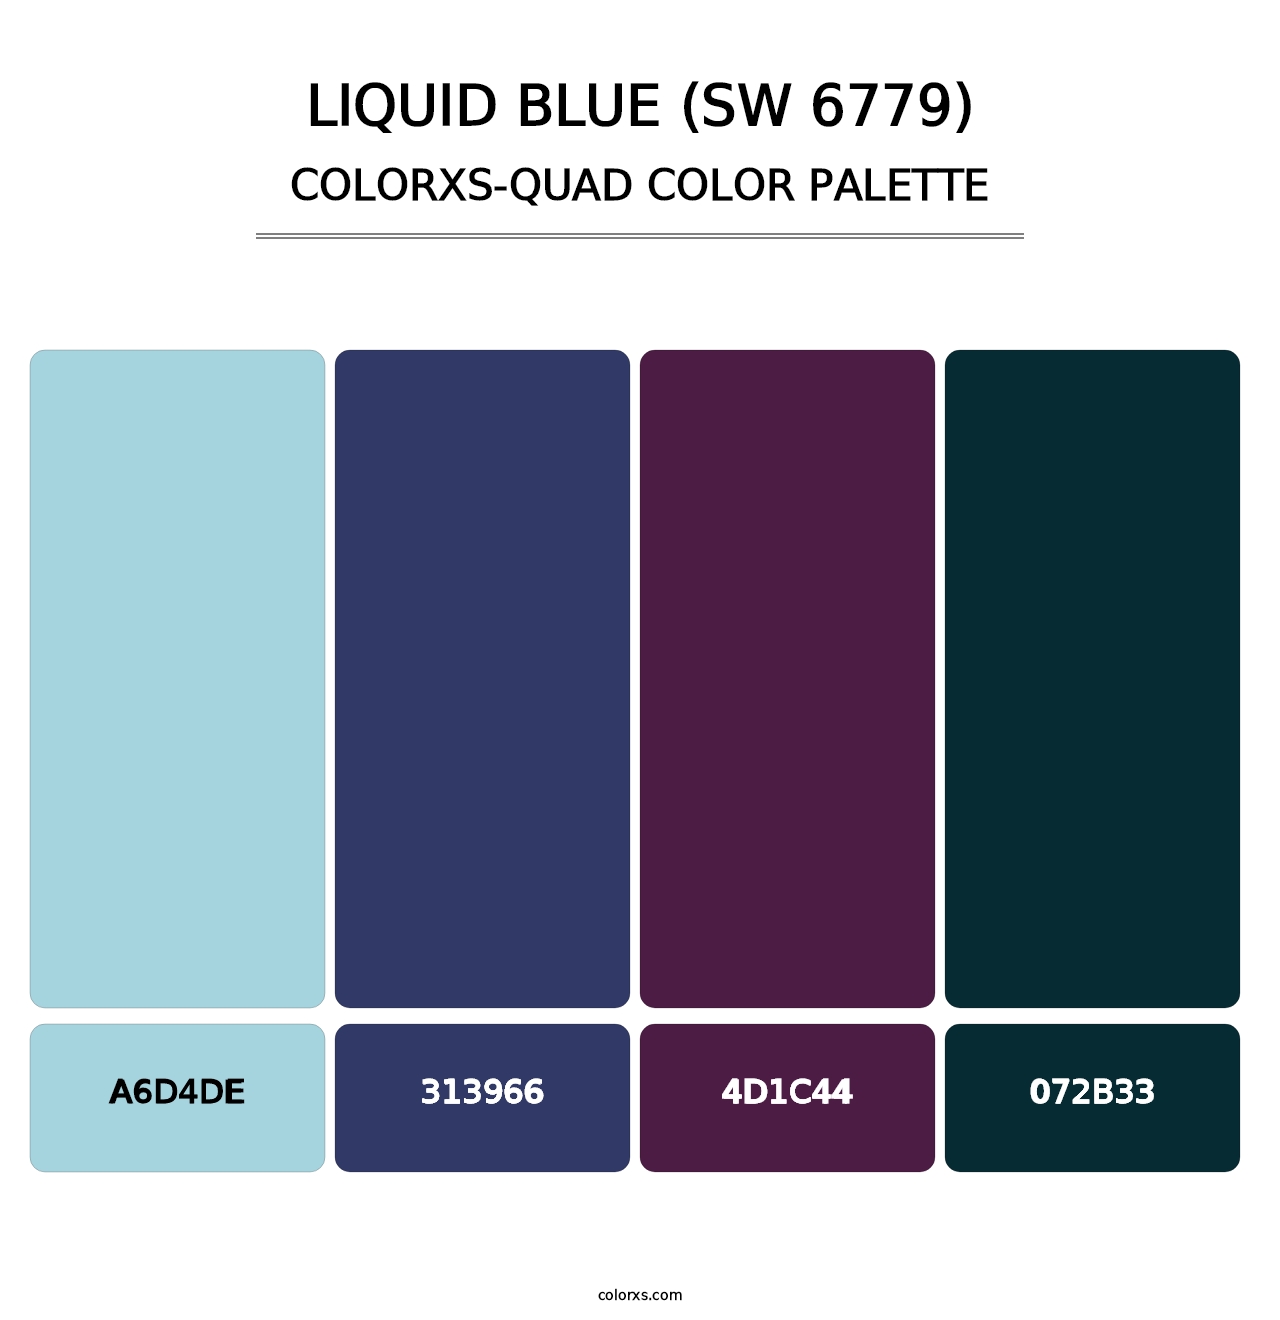 Liquid Blue (SW 6779) - Colorxs Quad Palette